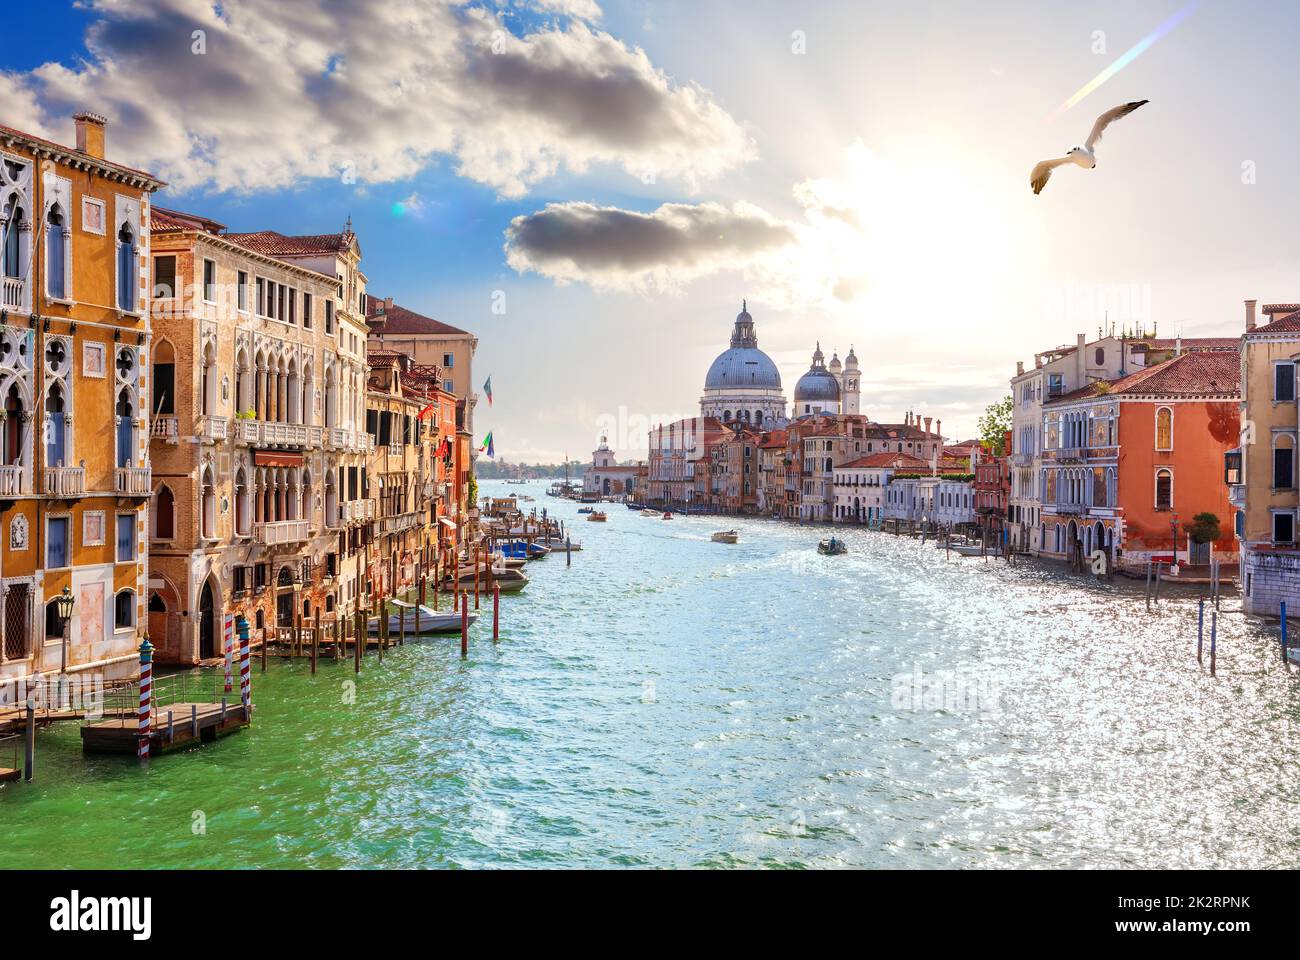 Lagoon in the Grand Canal of Venice near Santa Maria della Salute, Italy Stock Photo